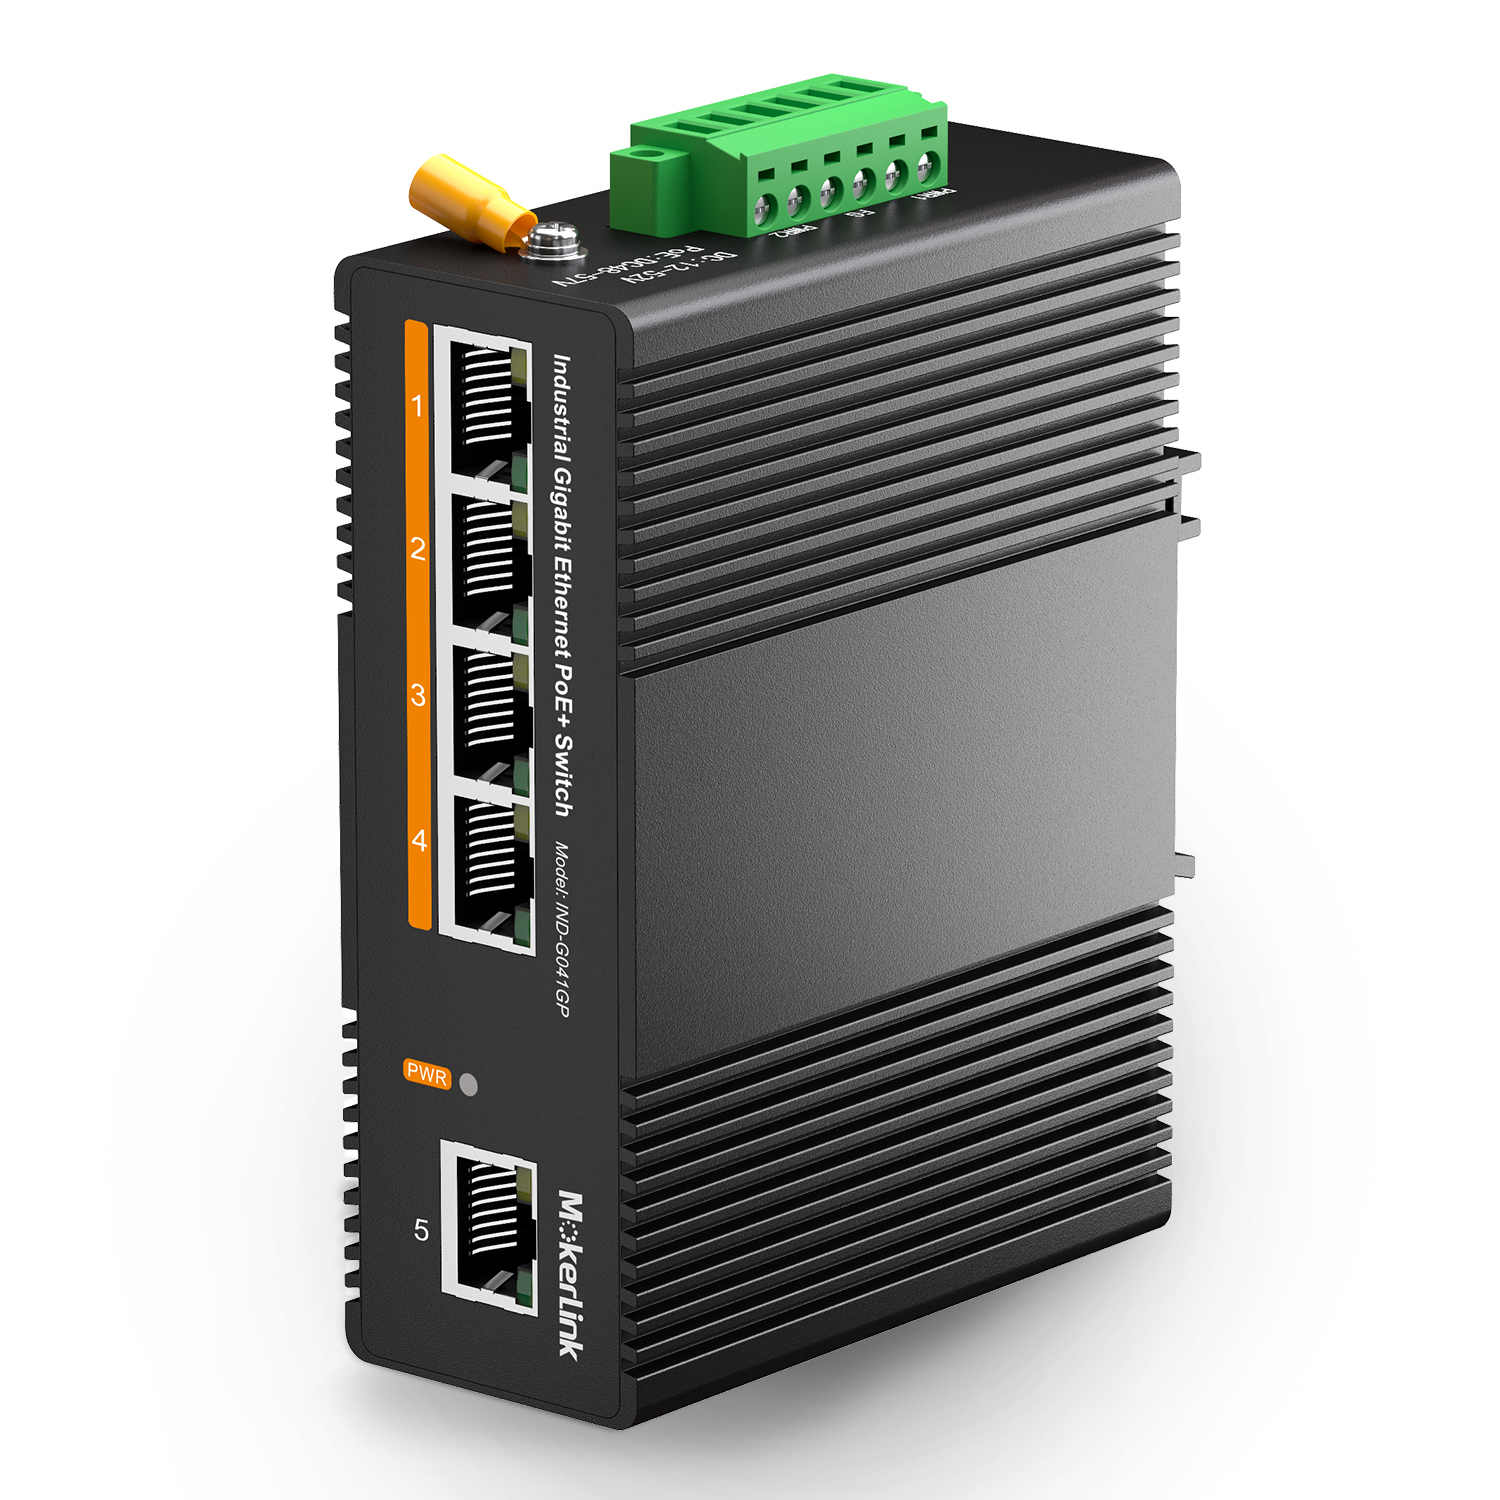 Switch Fibre Gigabit Industriel Administrable 5 Ports, IDS-305G